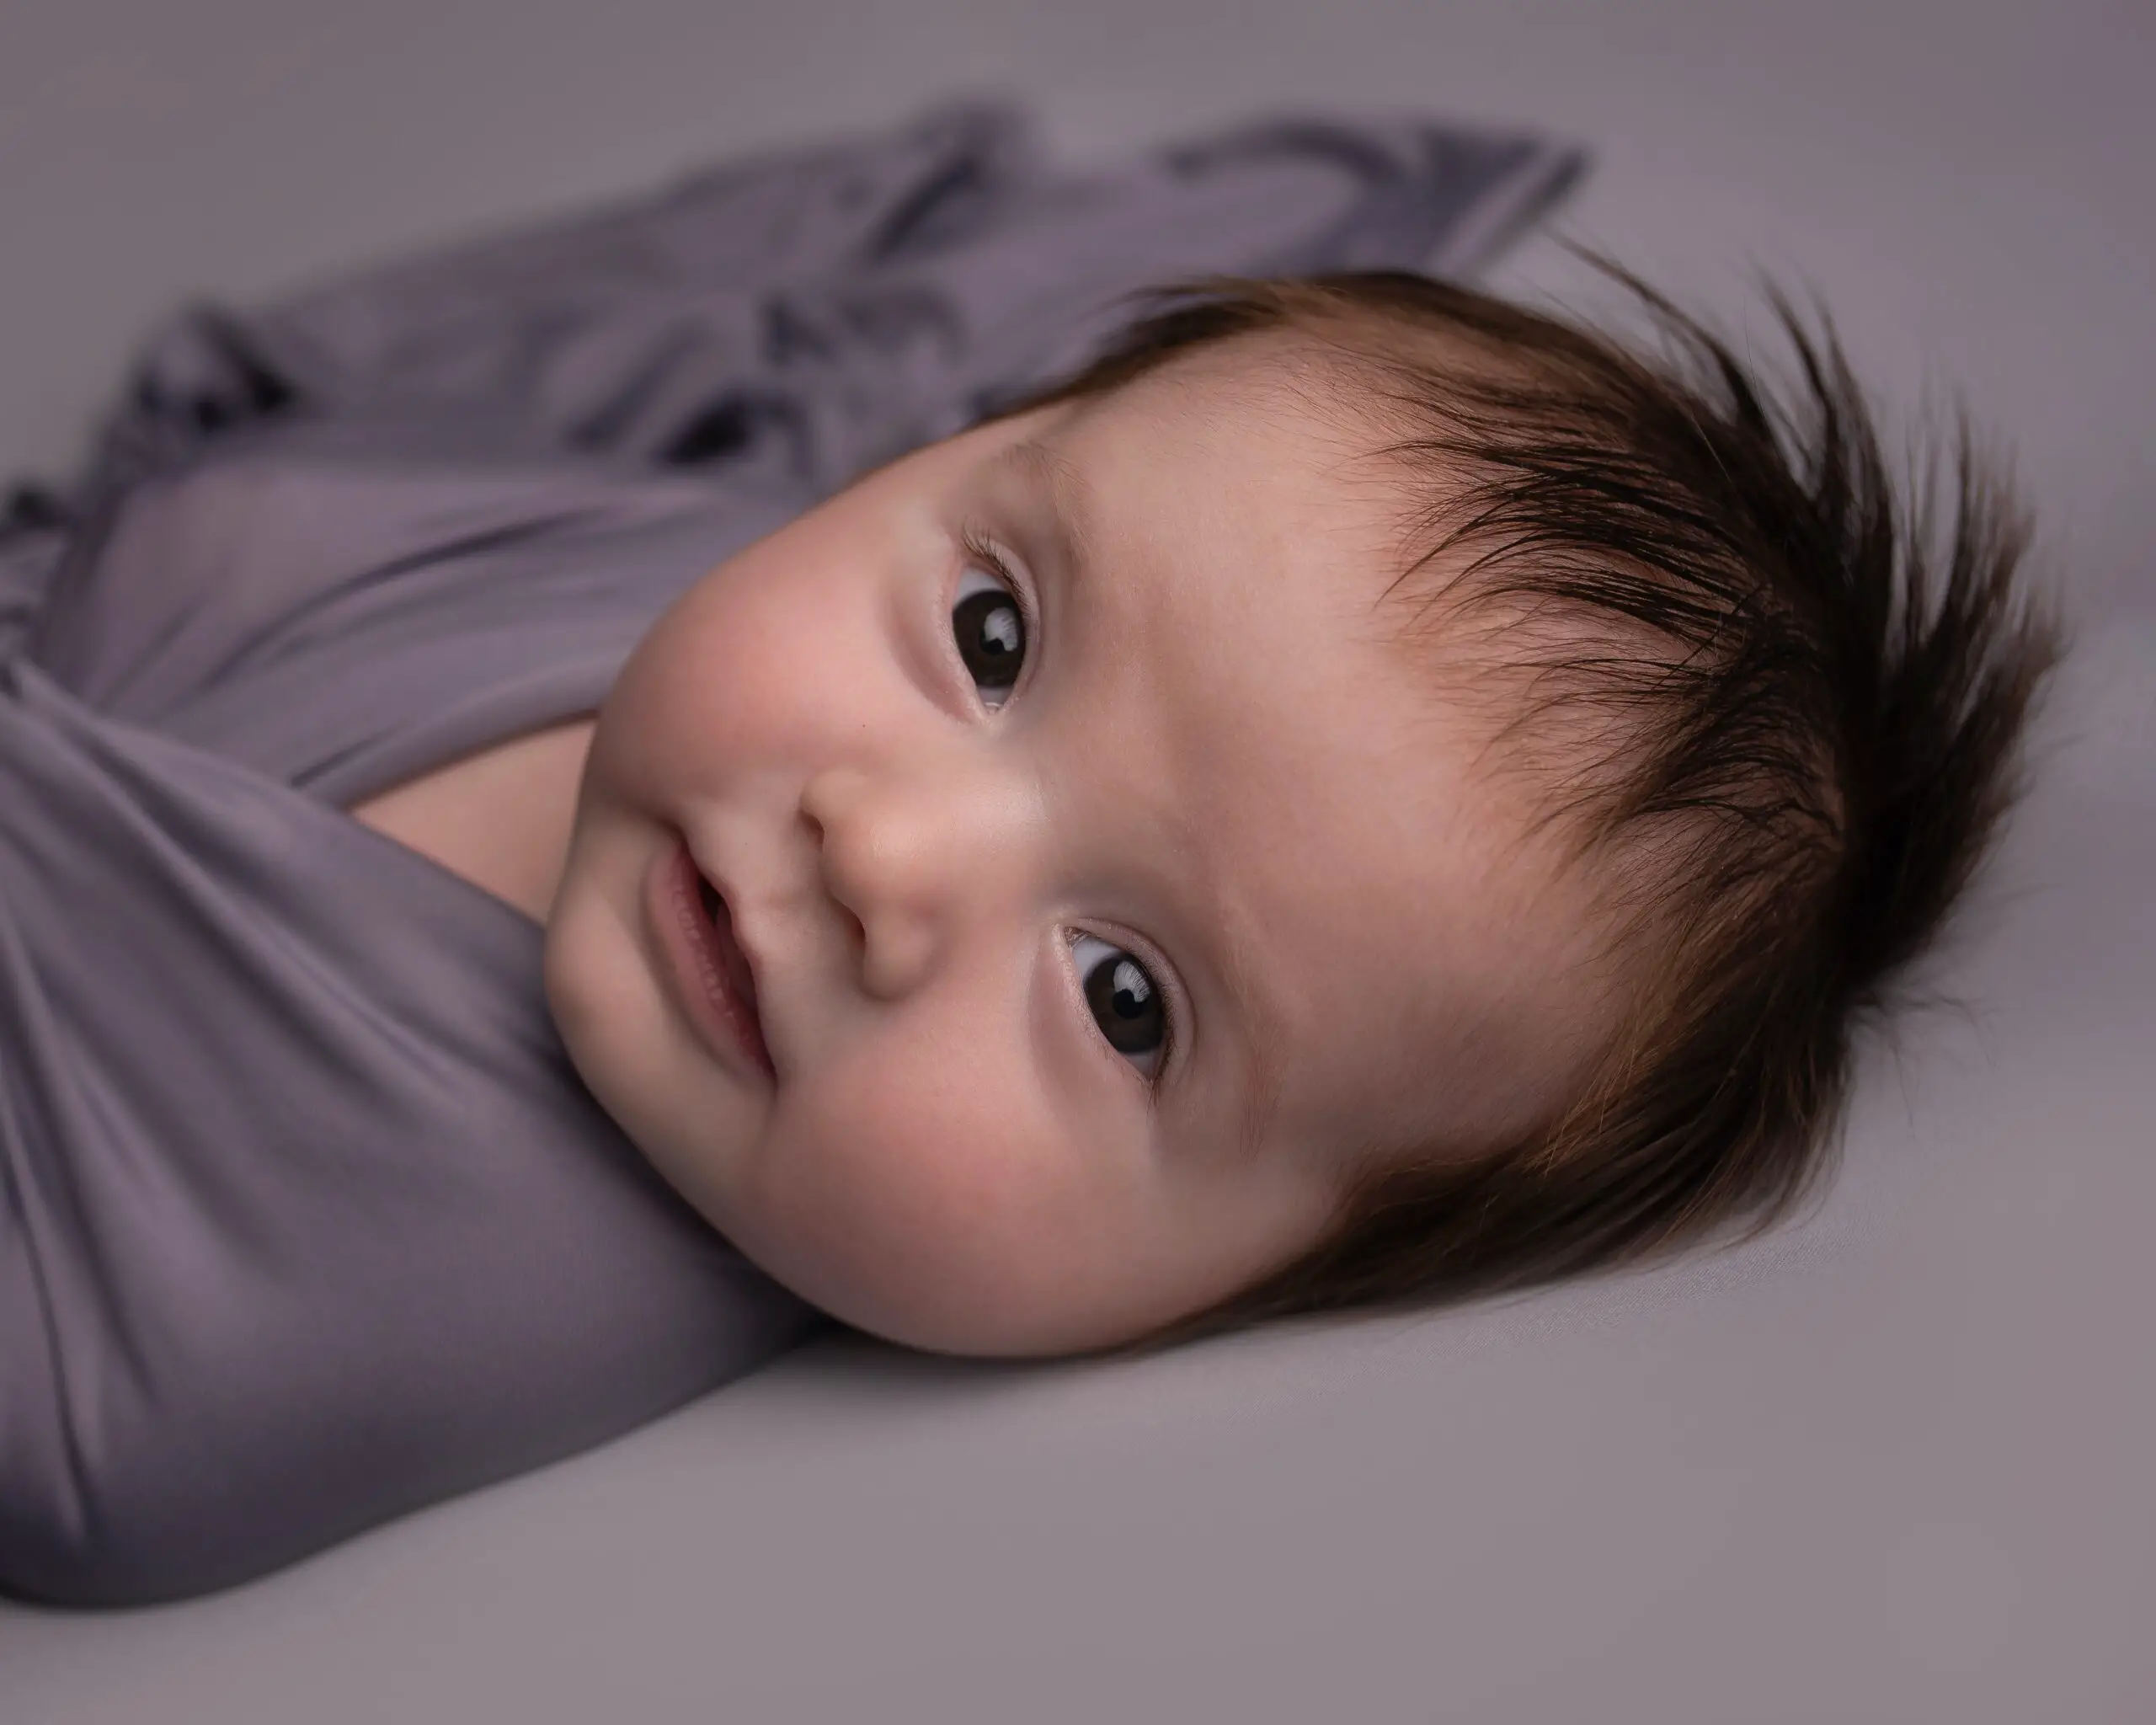 ¿Por qué los bebés parpadean menos que los adultos? -Revista Interesante